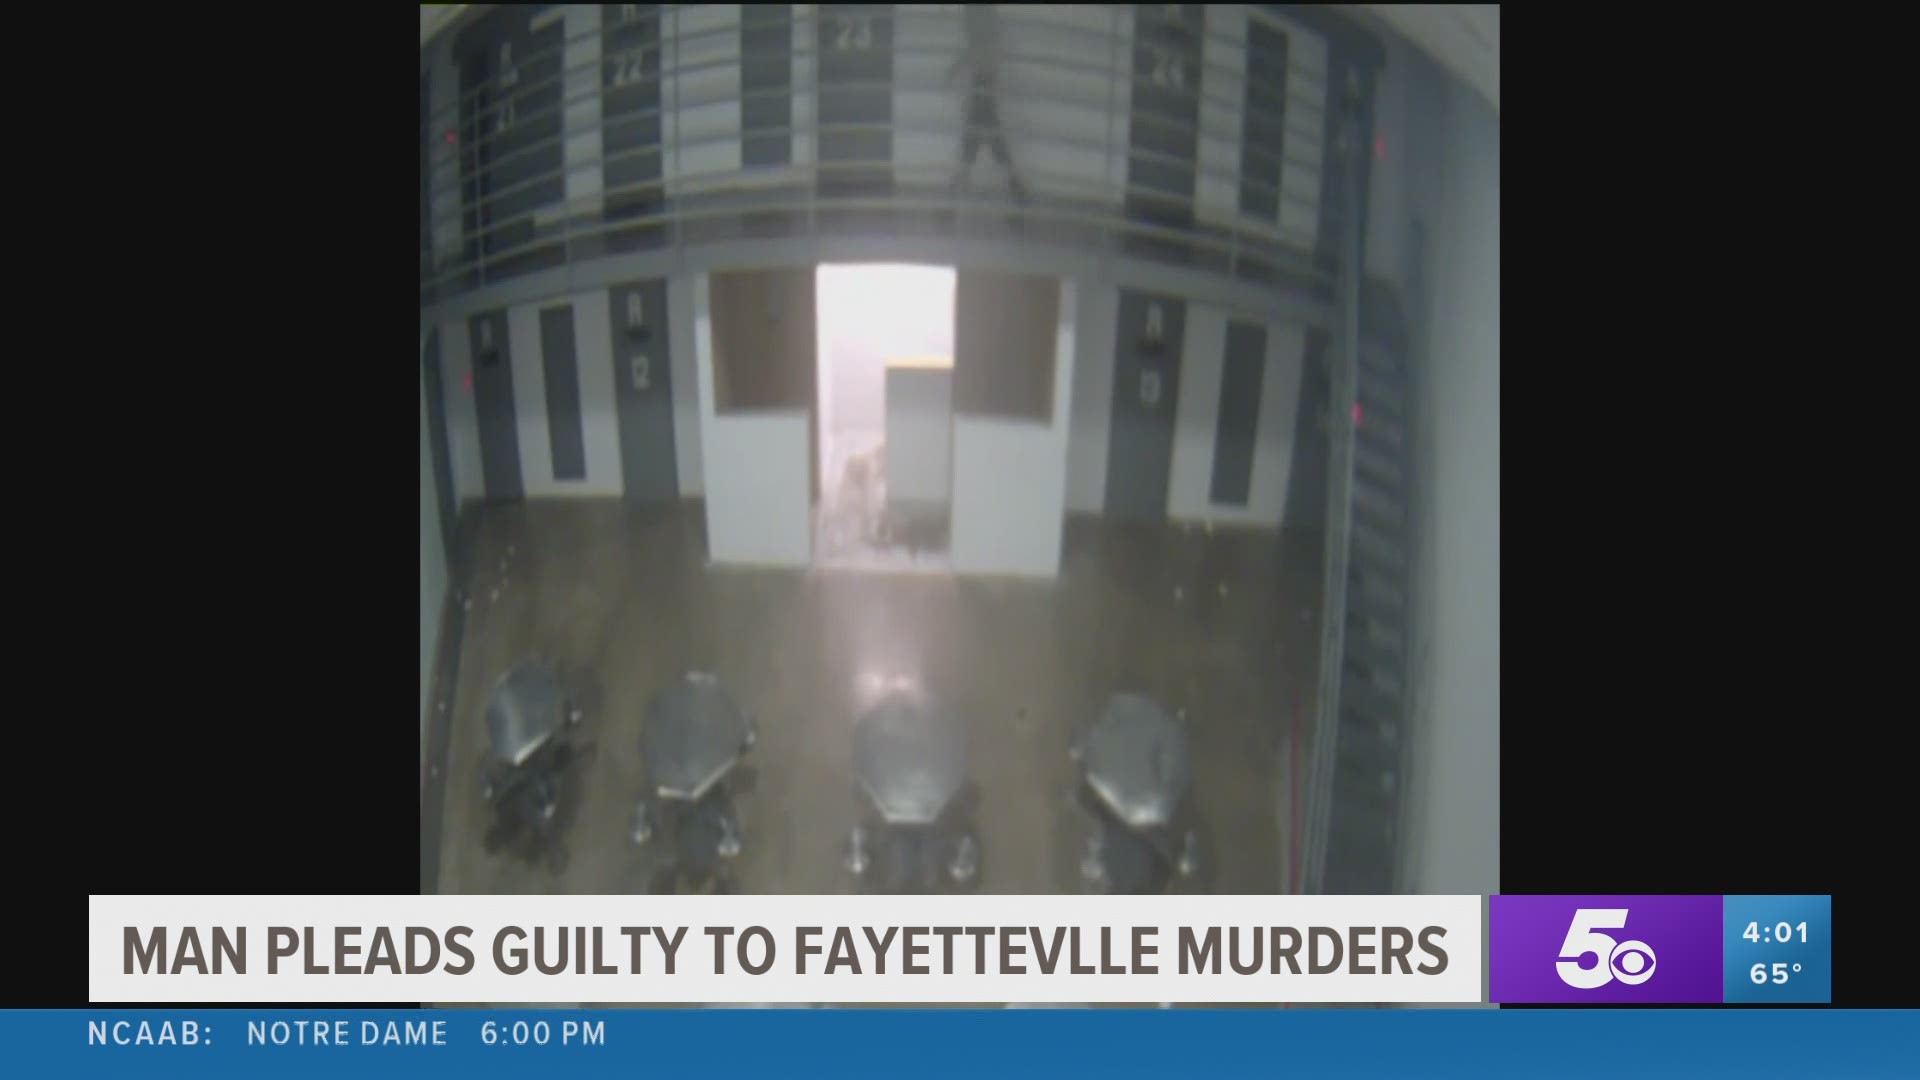 NWA man pleads guilty to Fayetteville murders